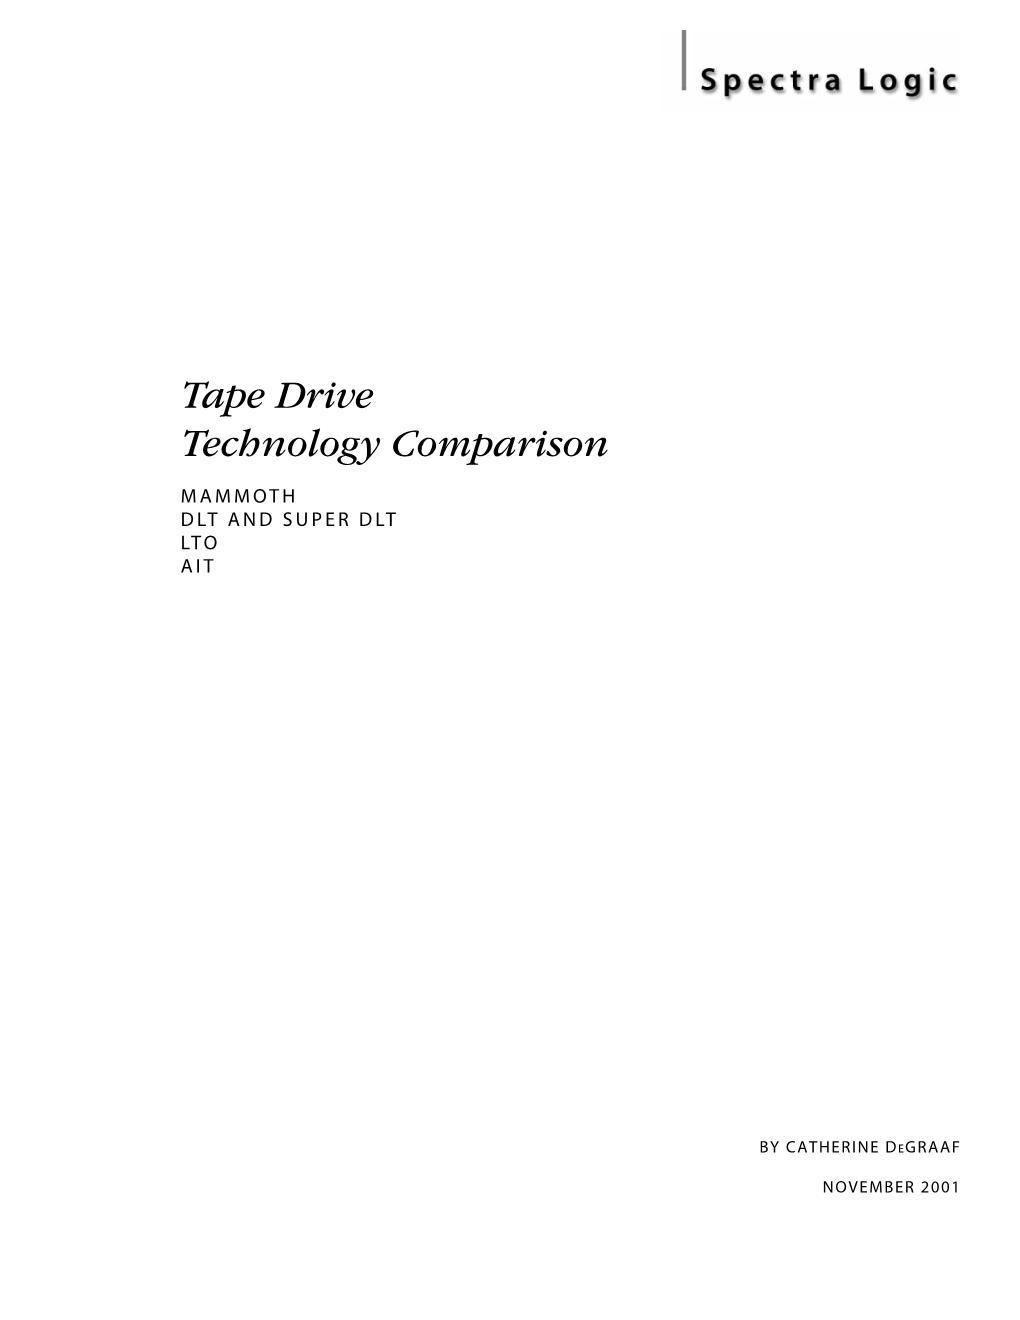 Tape Drive Technology Comparison